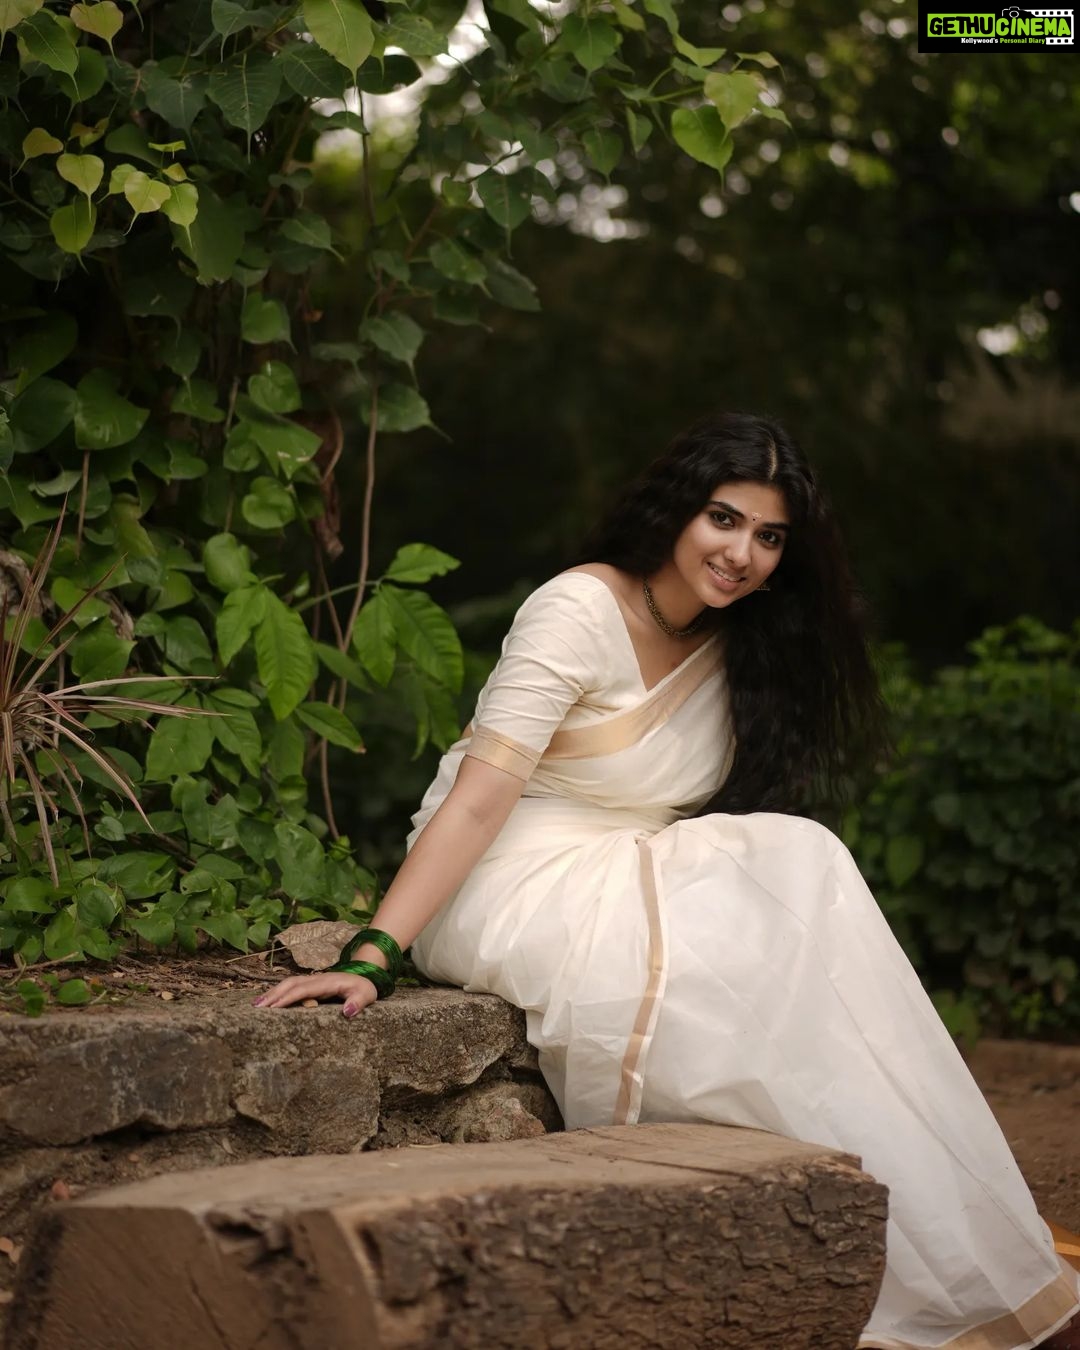 Actress Pragya Nagra HD Photos and Wallpapers September 2022 | Gethu Cinema